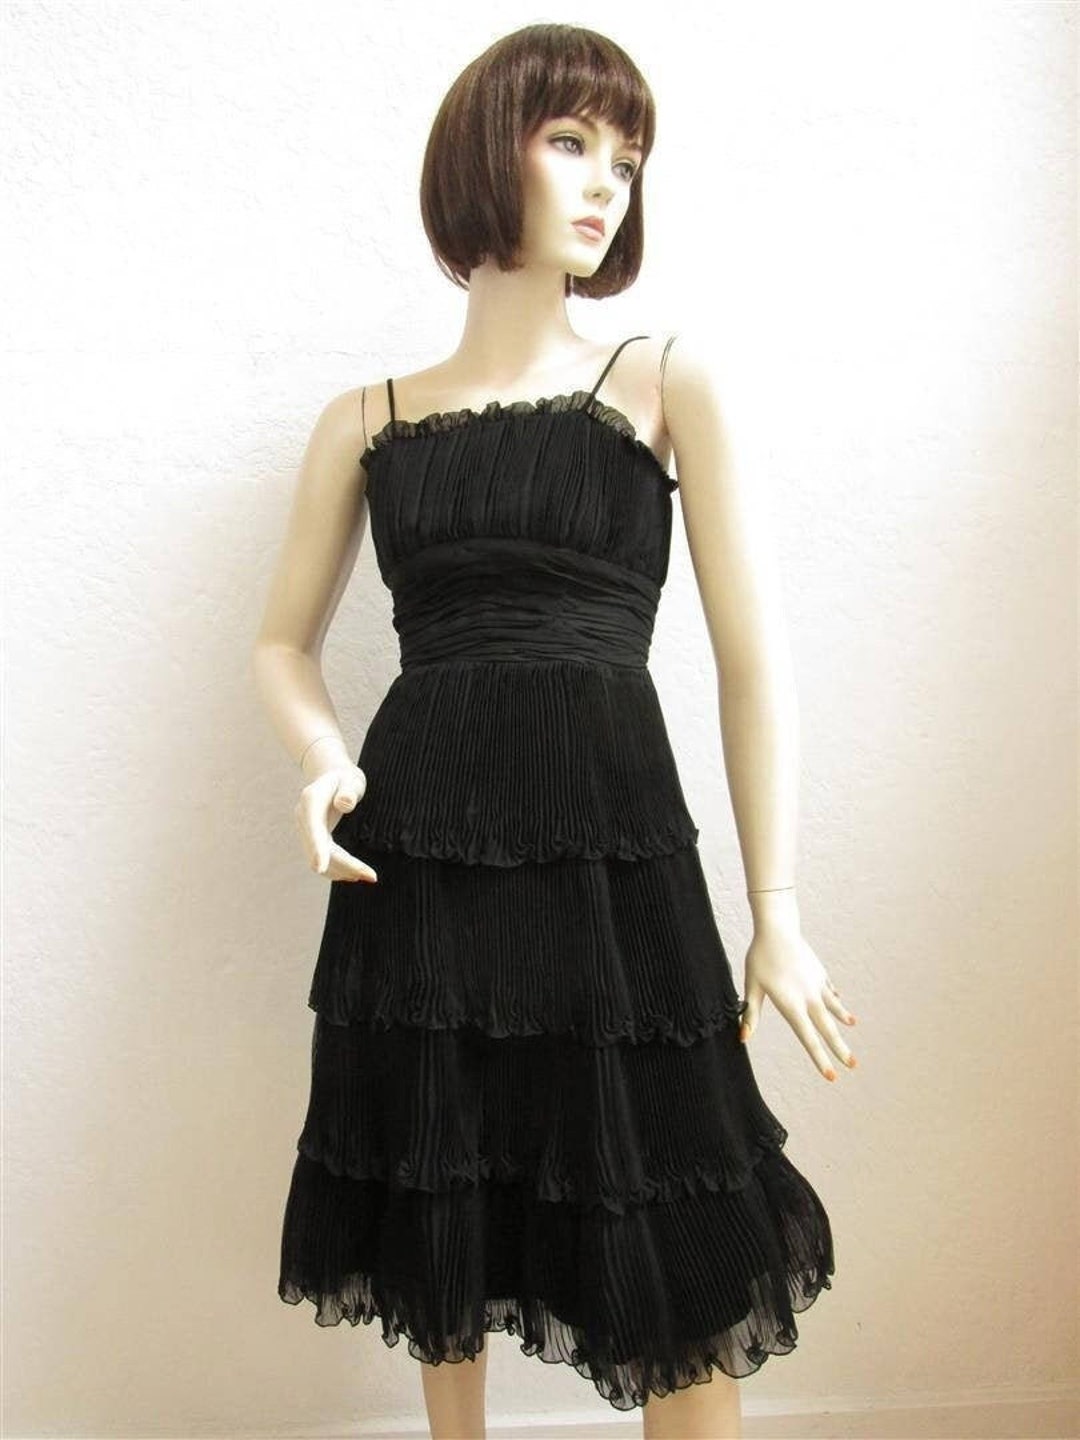 1950's suzy Perette Black Cocktail Party Dress - Etsy